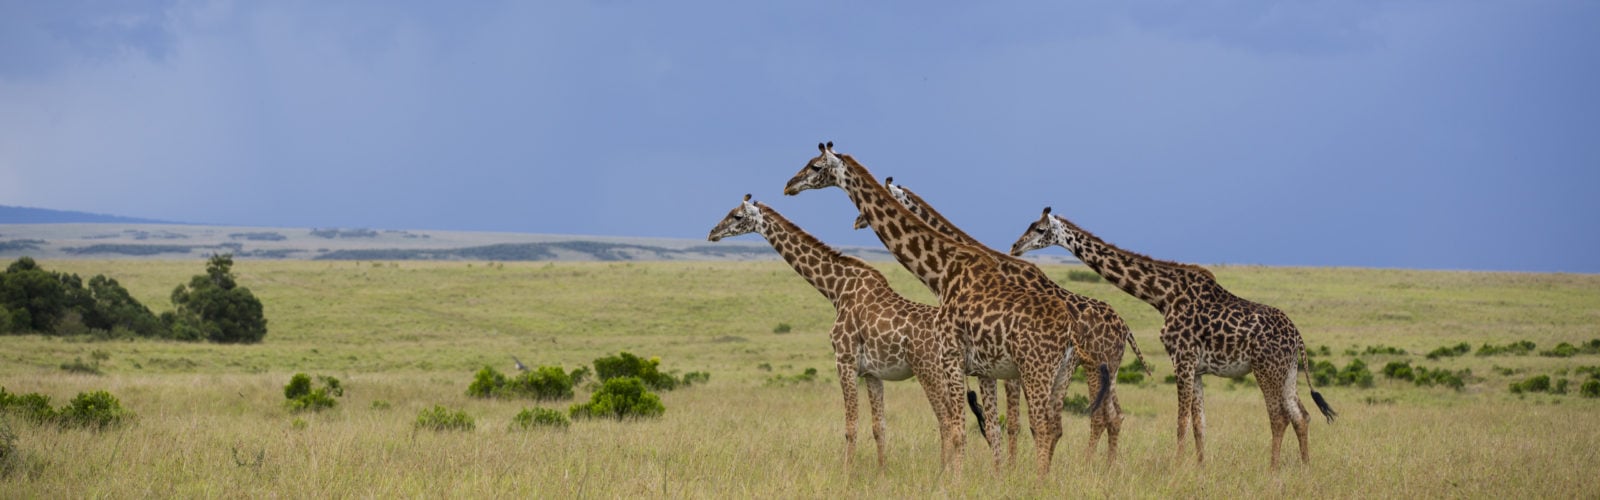 rekero-camp-giraffe